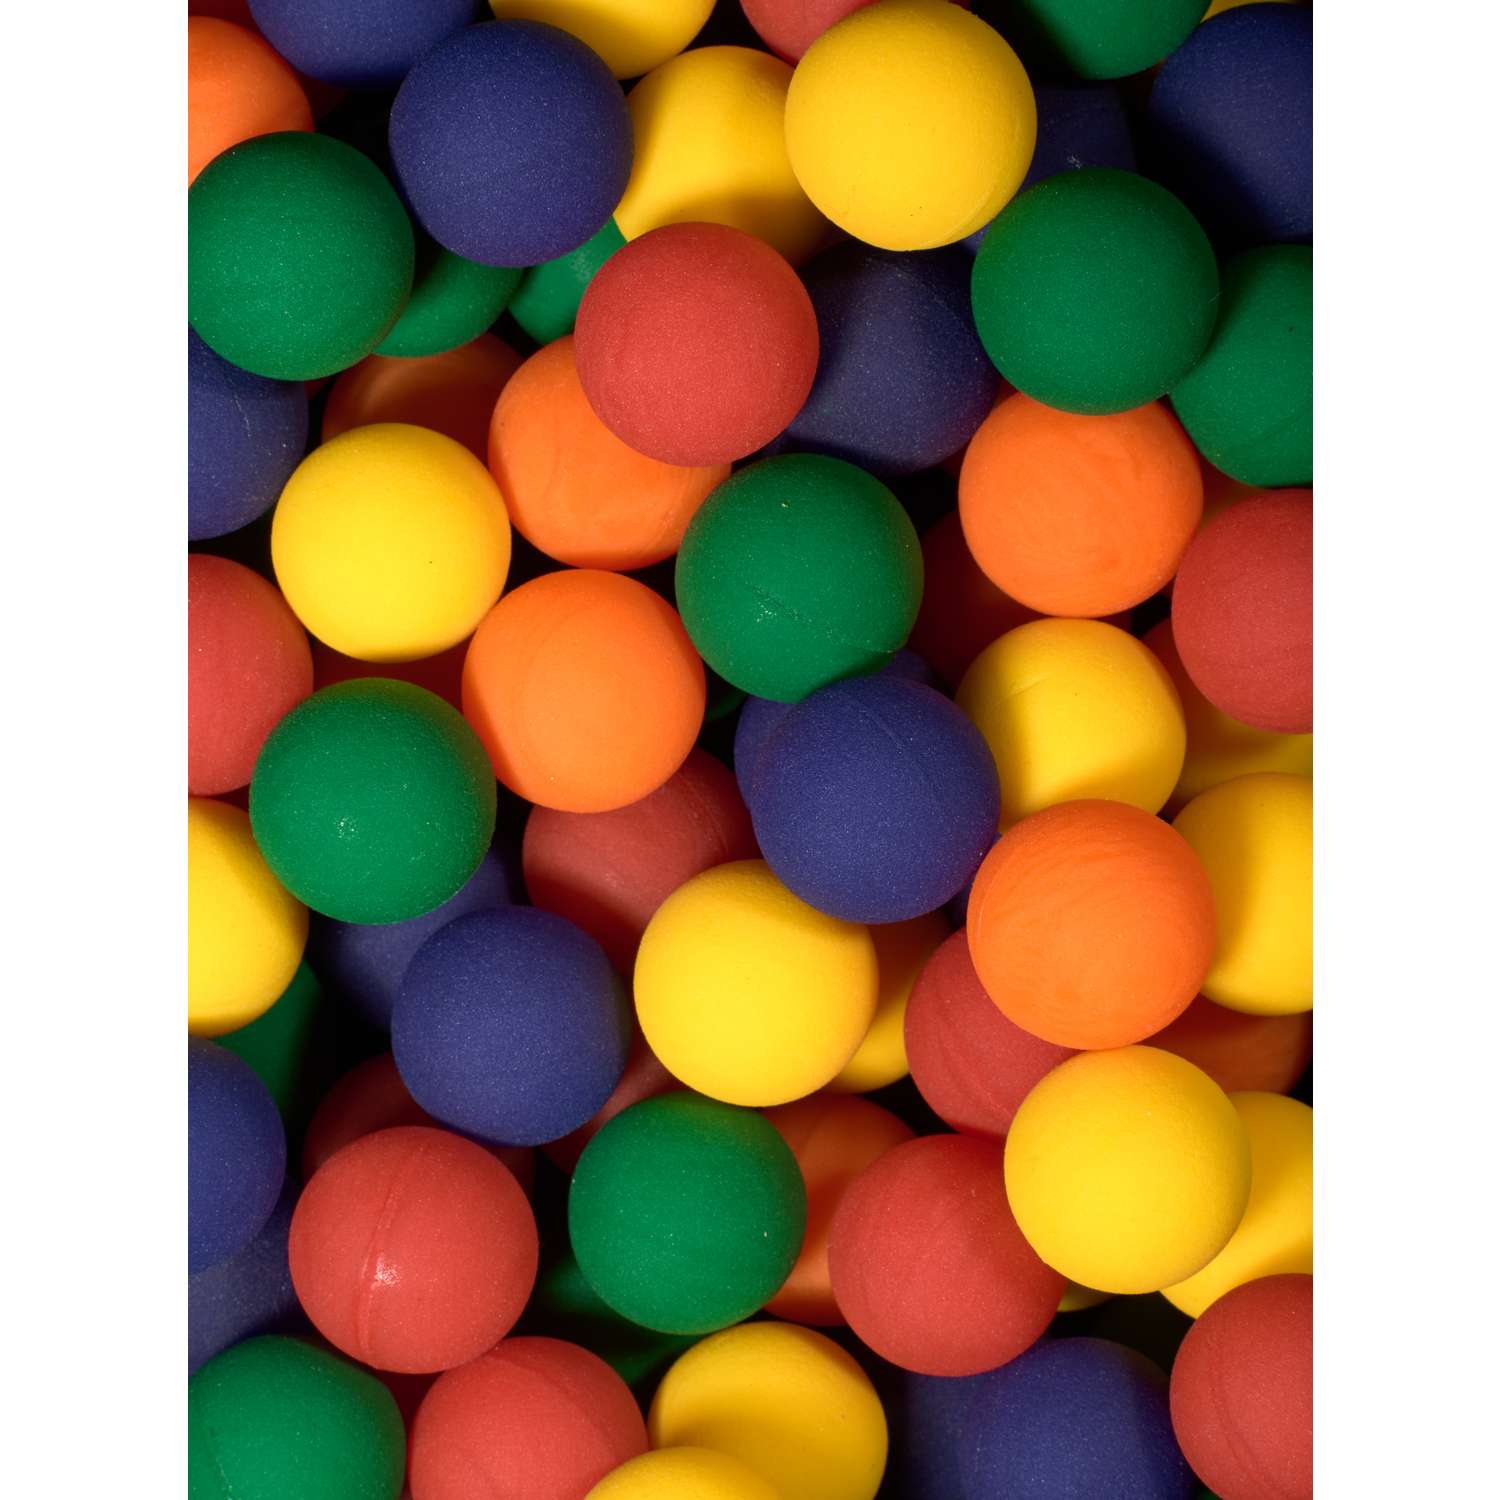 Мячи-прыгуны TopVending Морозные ягоды 45 мм 5 шт - фото 3